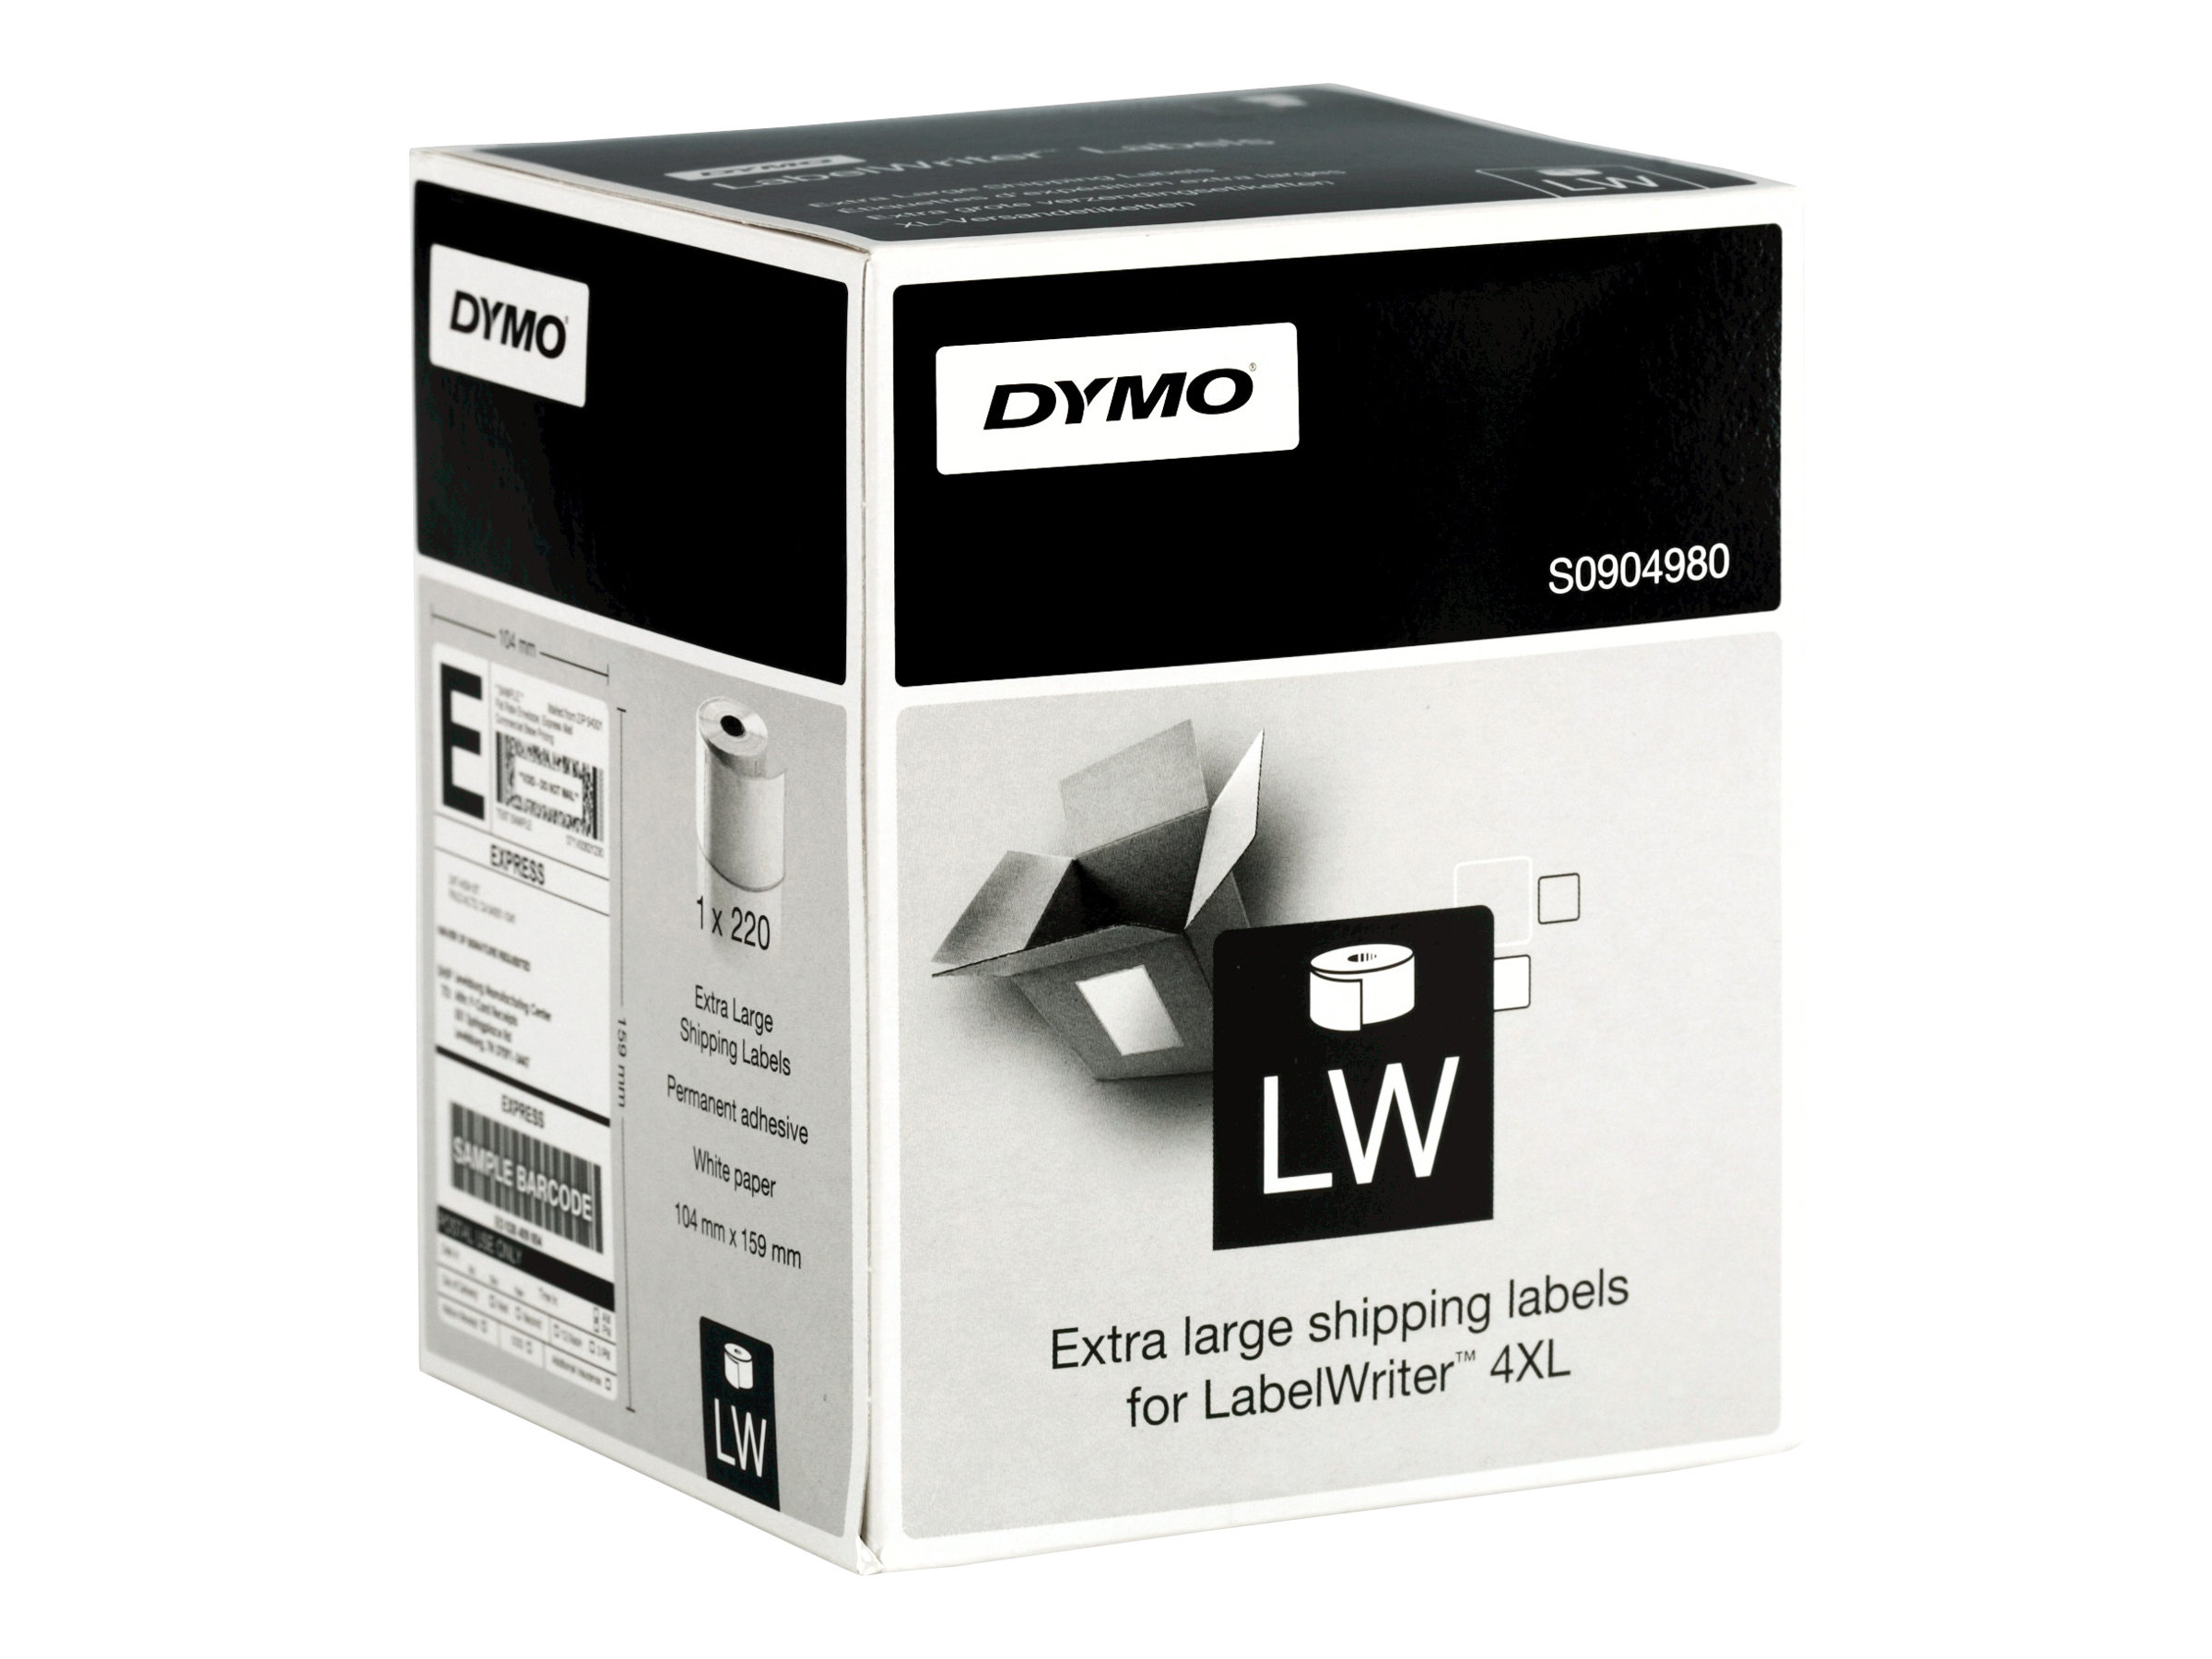 DYMO LabelWriter Extra Large Shipping Labels - 104 x 159 mm 220 Etikett(en) (1 Rolle(n) x 220) Versandetiketten - fr DYMO Label